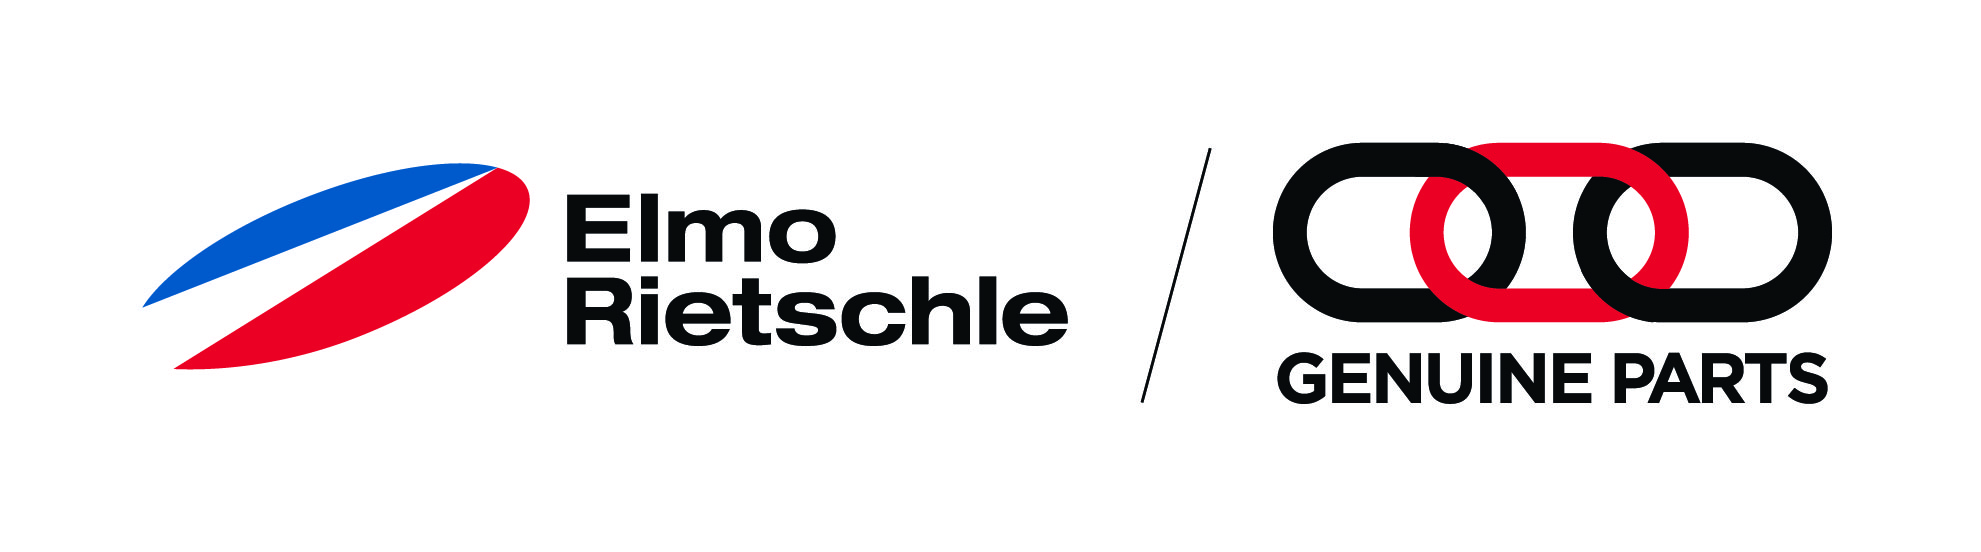 Elmo Rietschle Genuine Parts Logo